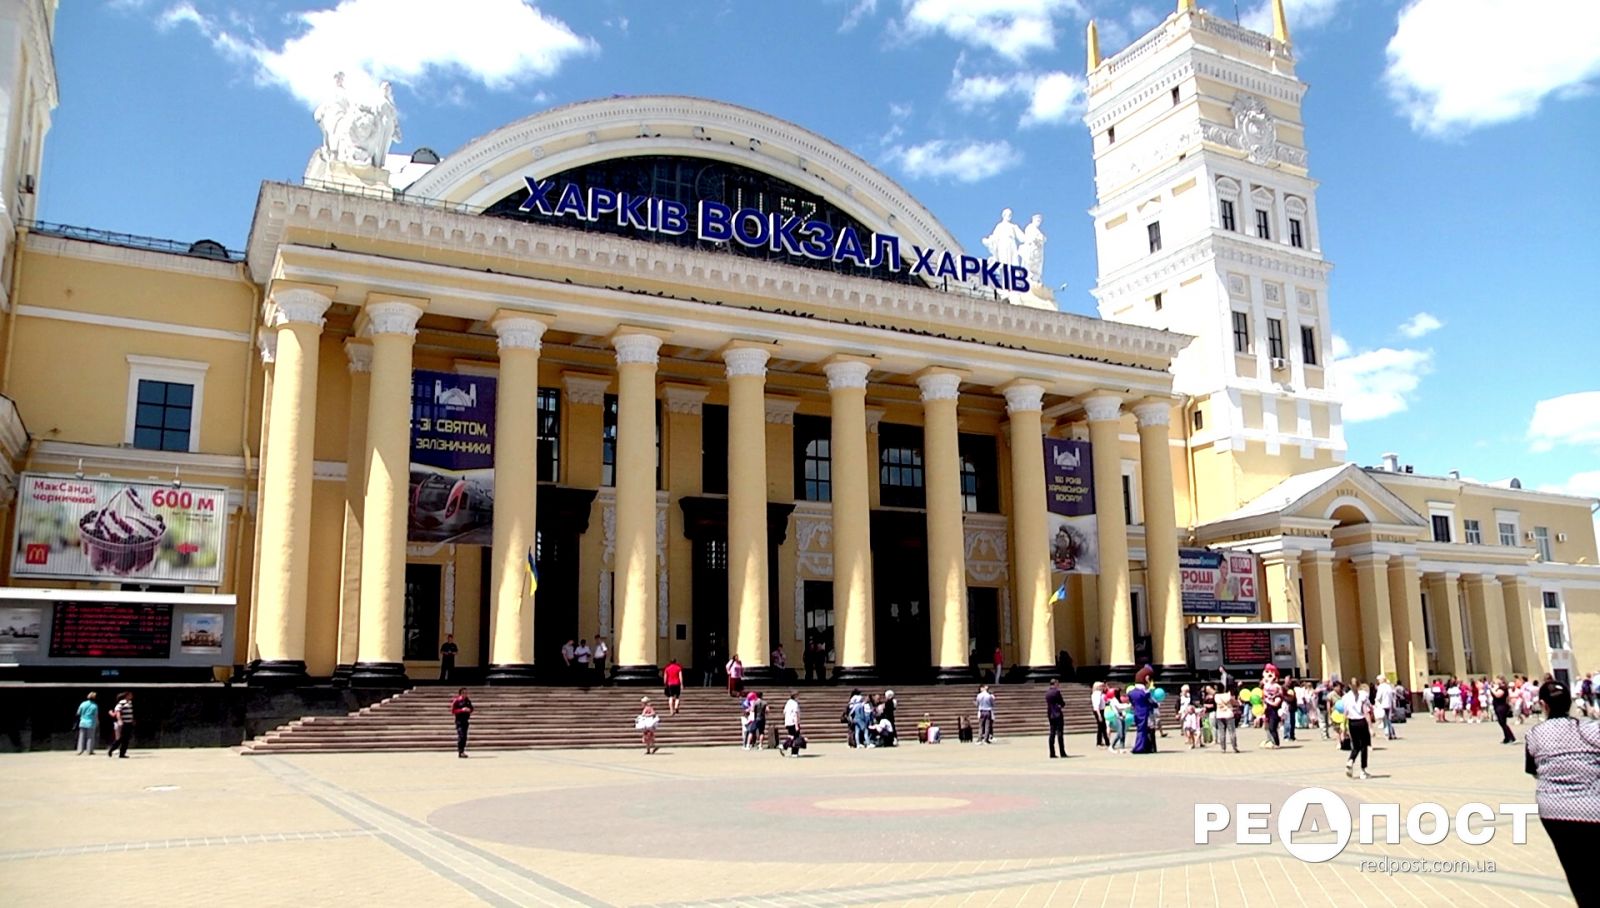 Бери - не хочу: Южный вокзал сдадут в долгосрочную аренду предпринимателям. новости Харькова